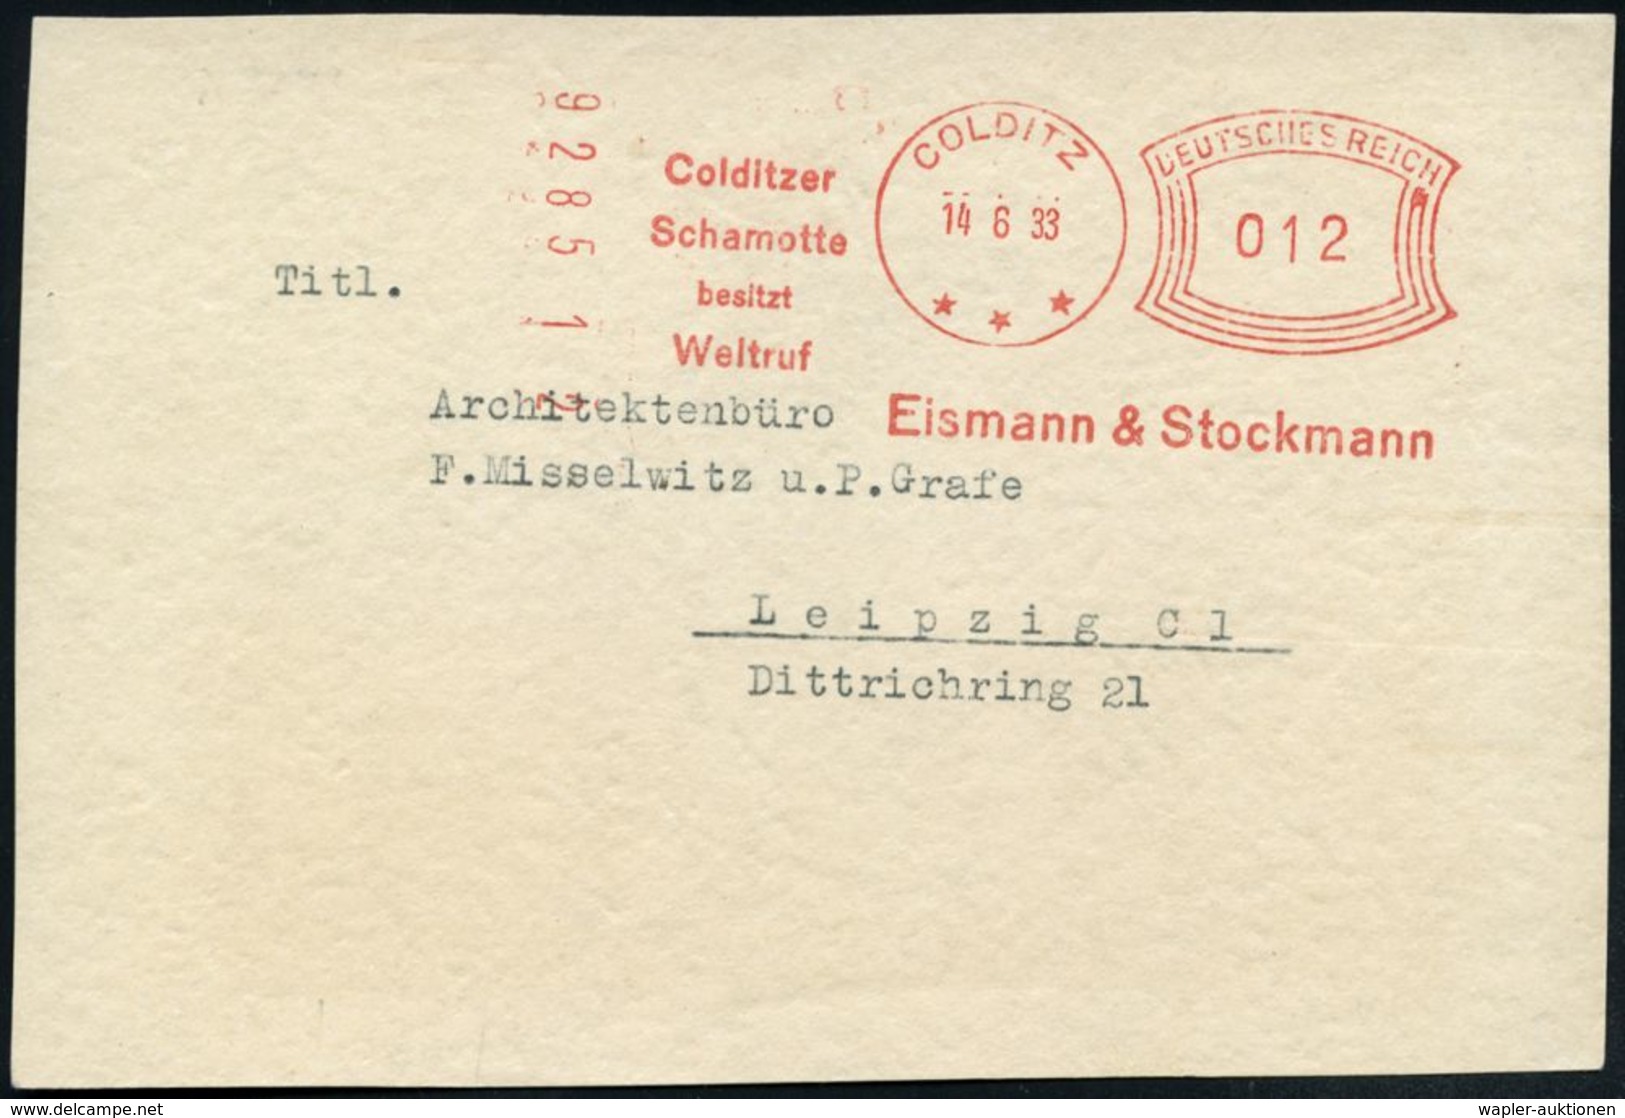 COLDITZ/ ***/ Colditzer/ Schamotte/ Besitzt/ Weltruf/ Eismann & Stockmann 1933 (14.6.) Seltener AFS-Typ "Komusina" Klar  - Porcelaine